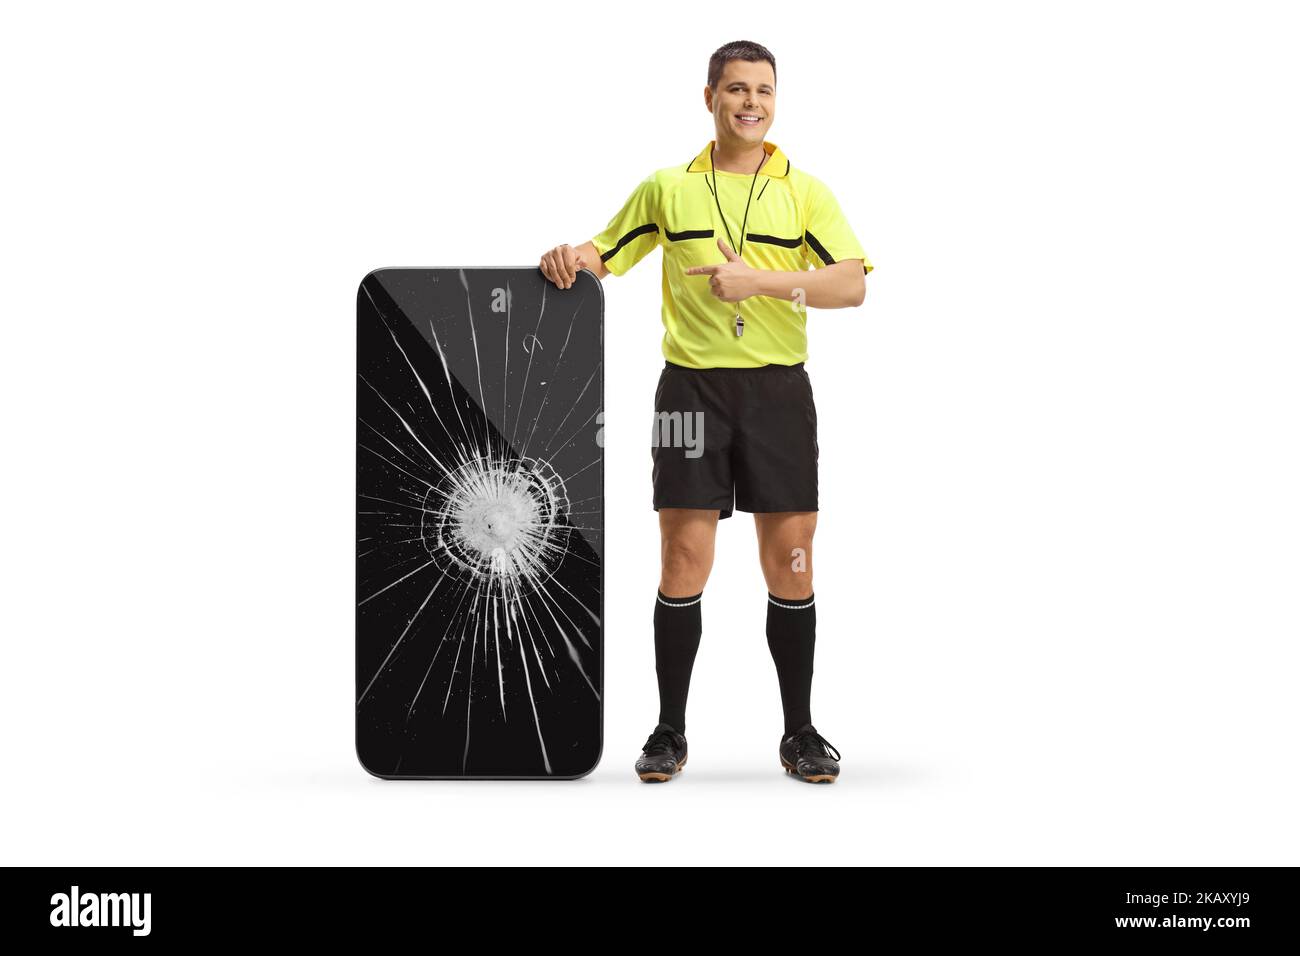 Portrait complet d'un arbitre de football pointant vers un smartphone écran cassé isolé sur fond blanc Banque D'Images